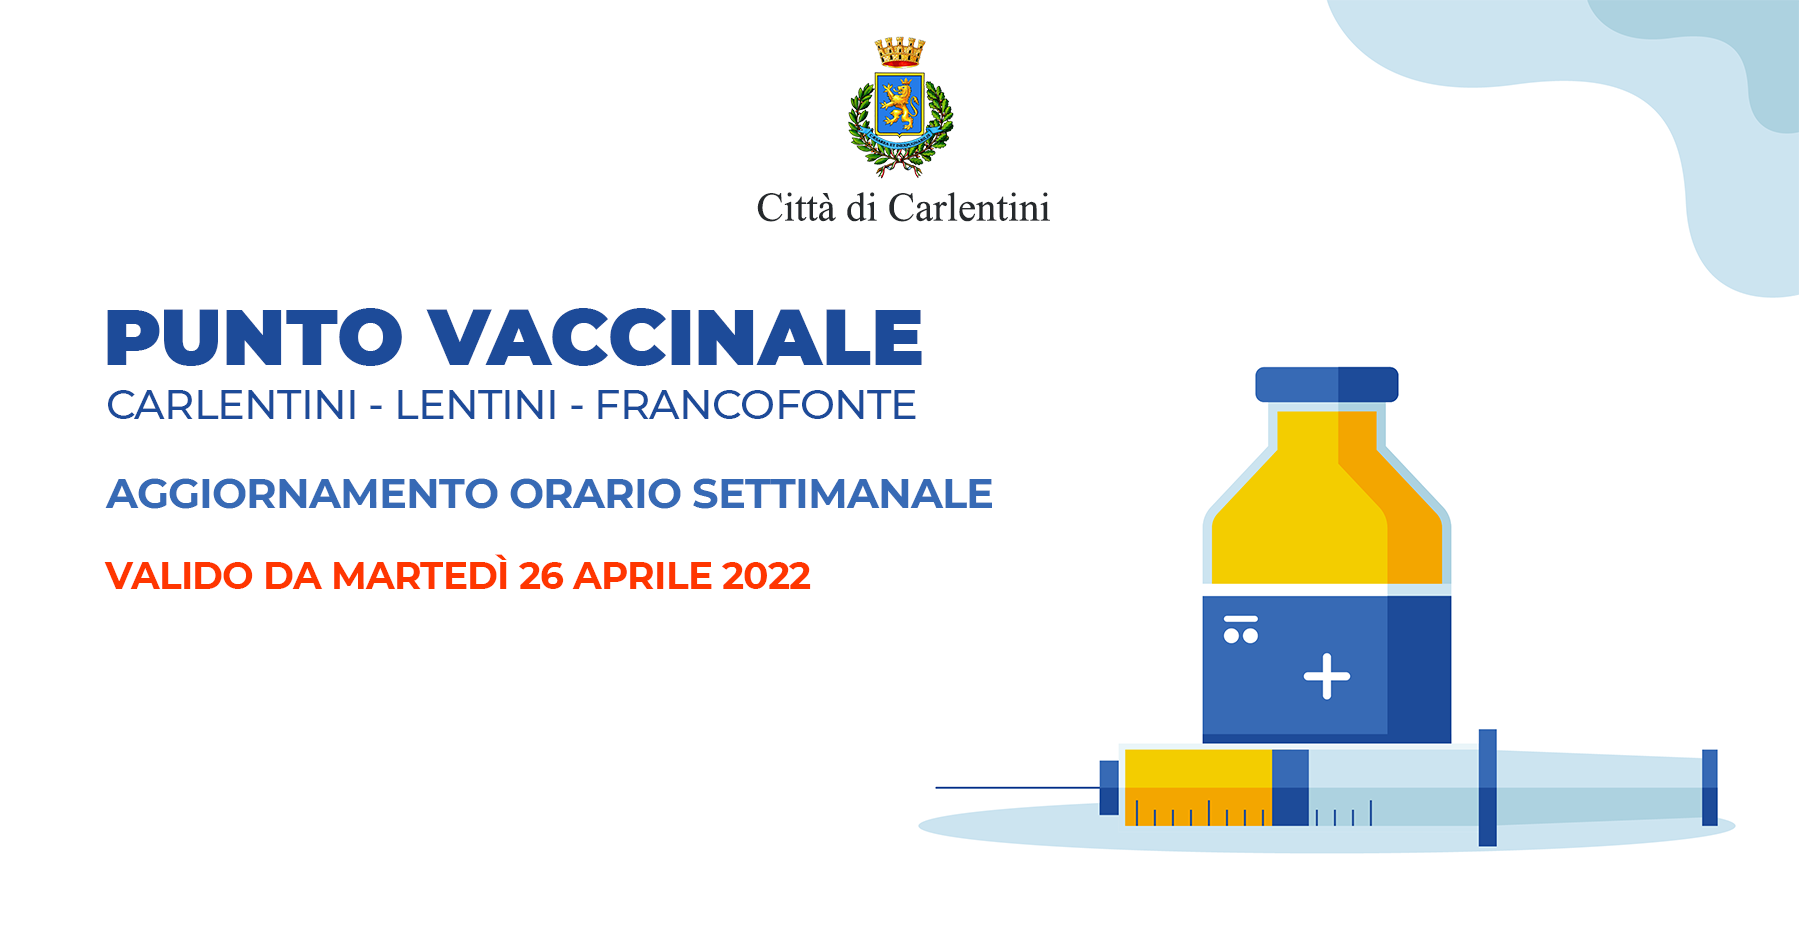 Punto vaccinale: aggiornamento orario settimanale, a partire da martedì 26 aprile.